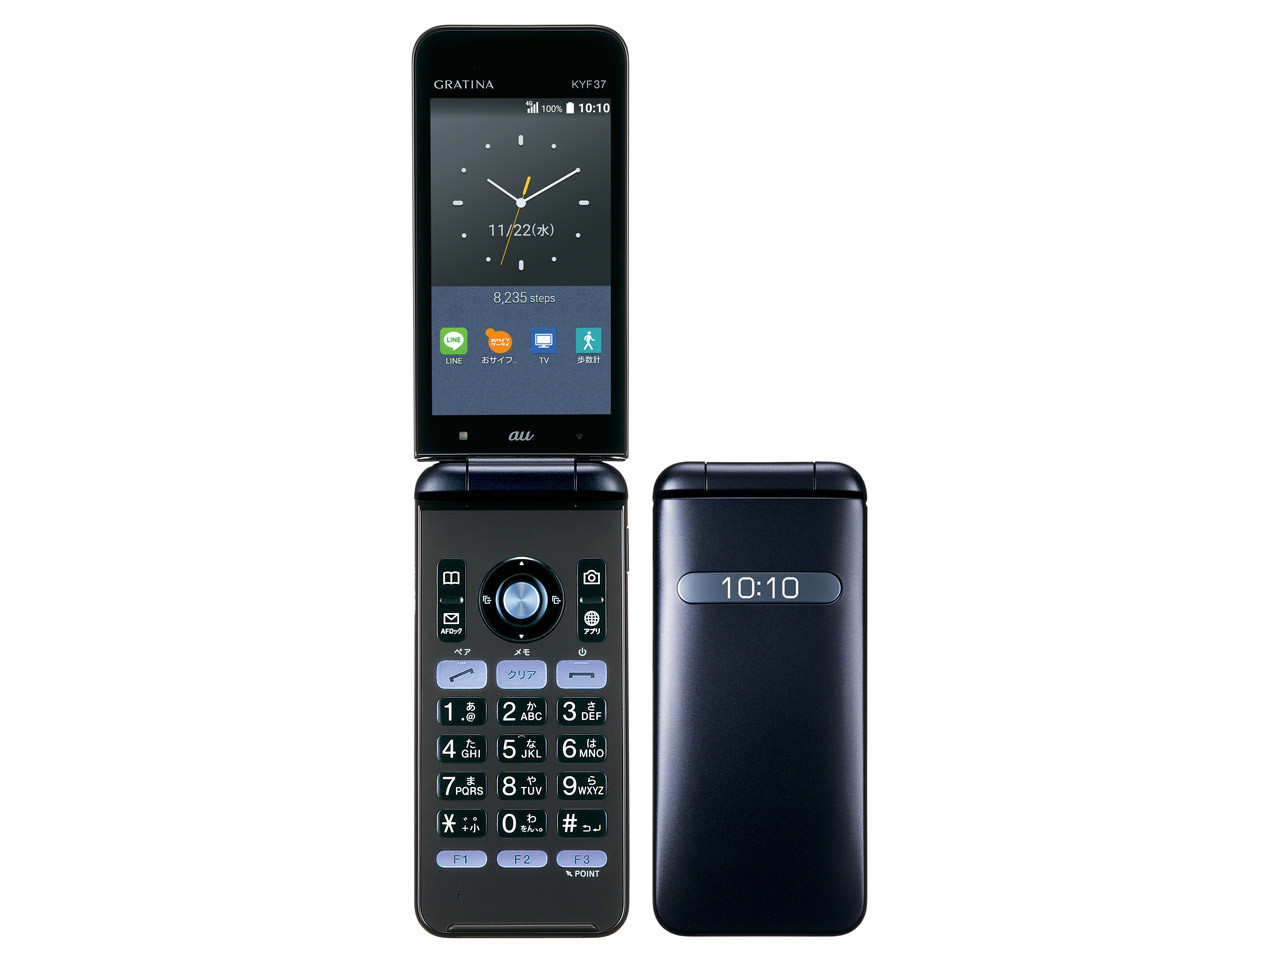 Kyocera KYF37 Gratina2 4G WiFi Keitai Tough Android Flip Phone Unlocked